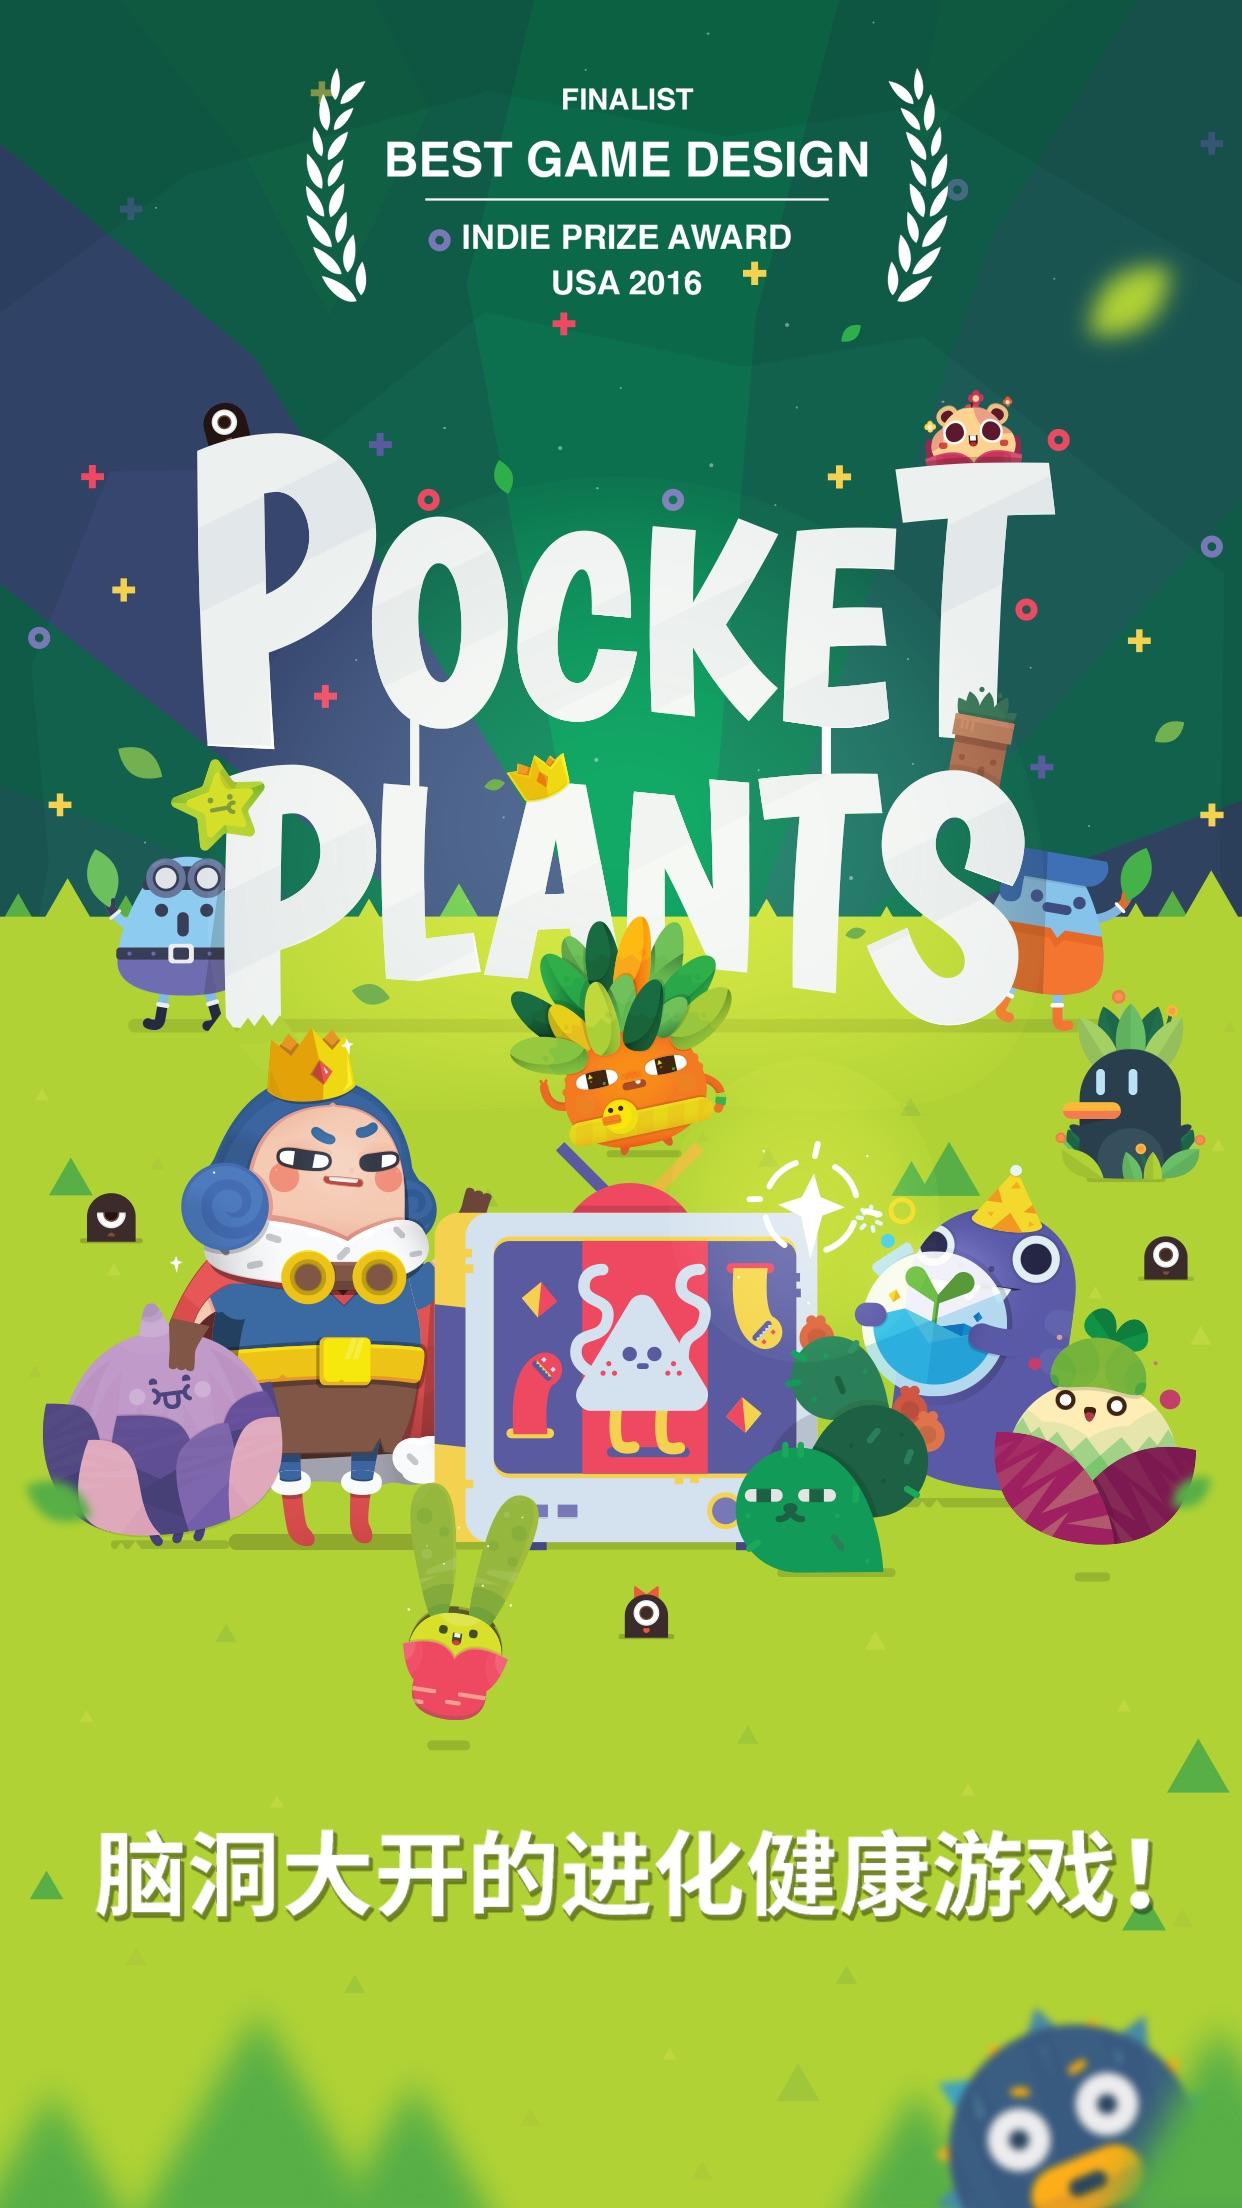 Screenshot 1 of Pocket Plants: Trò chơi thực vật ấm cúng 2.10.6